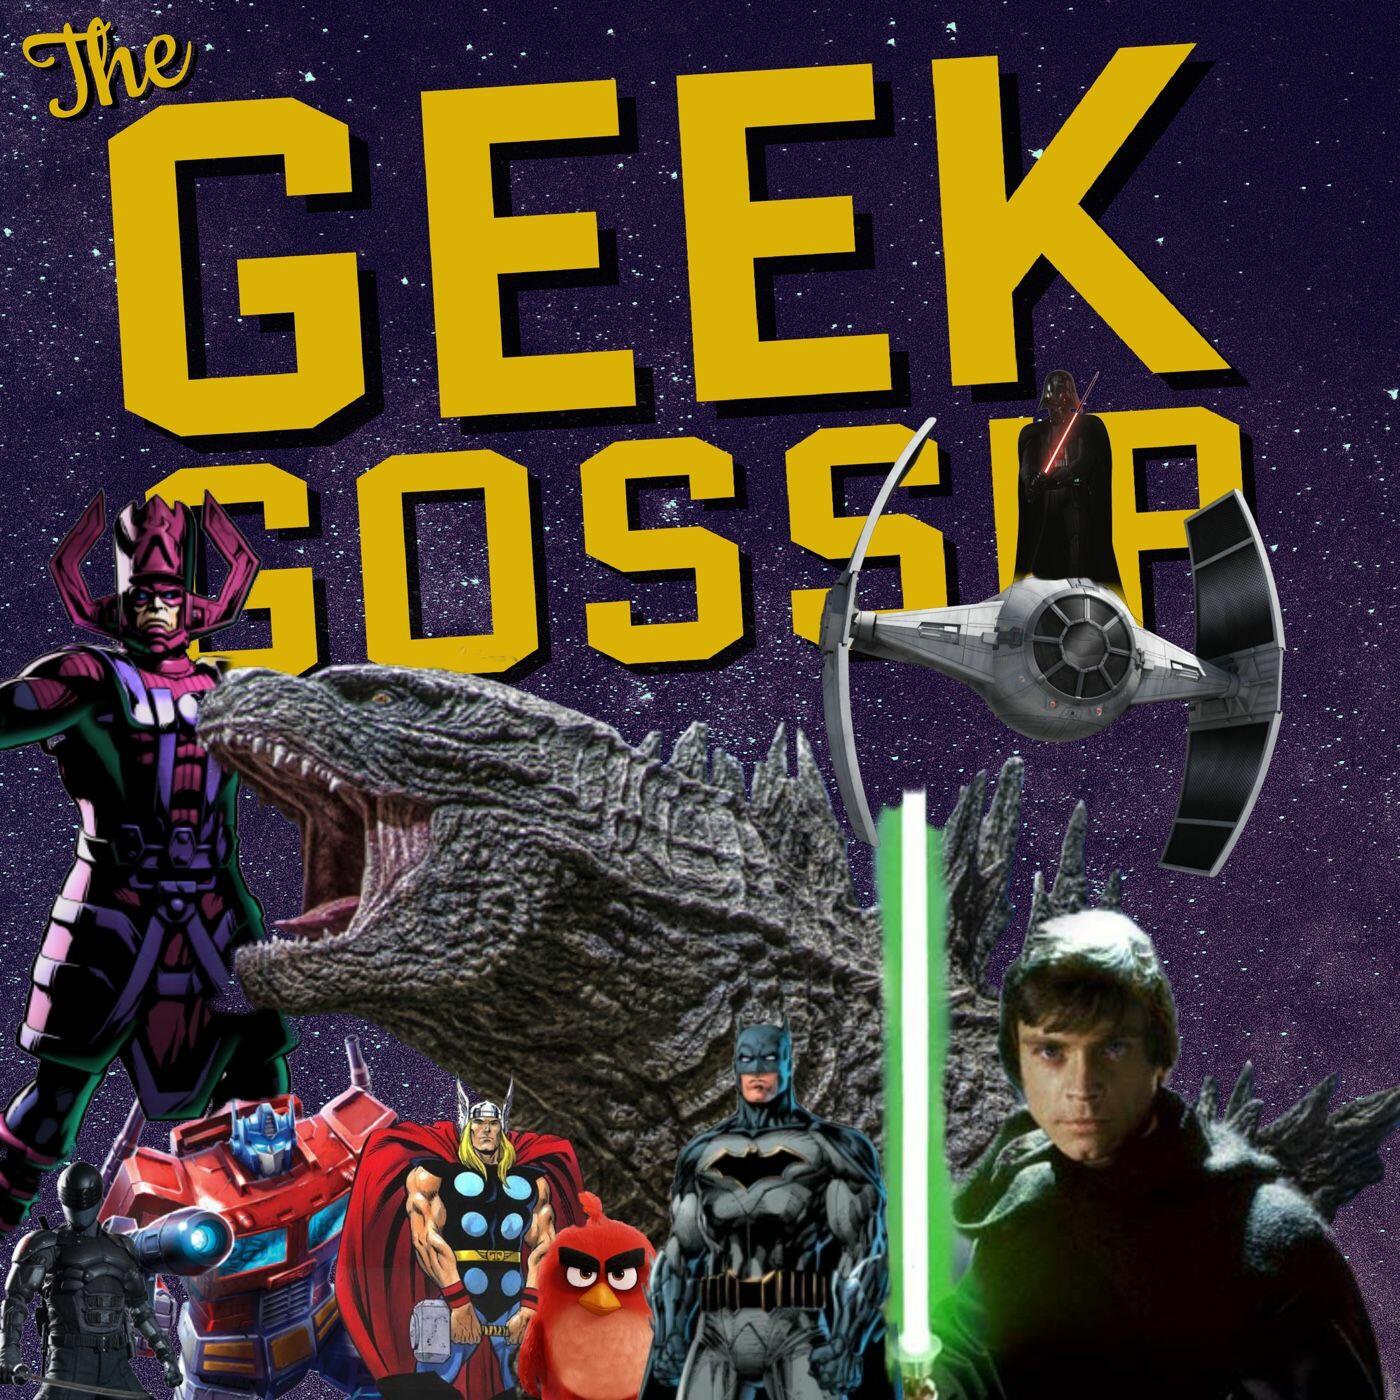 The Geek Gossip Iheartradio